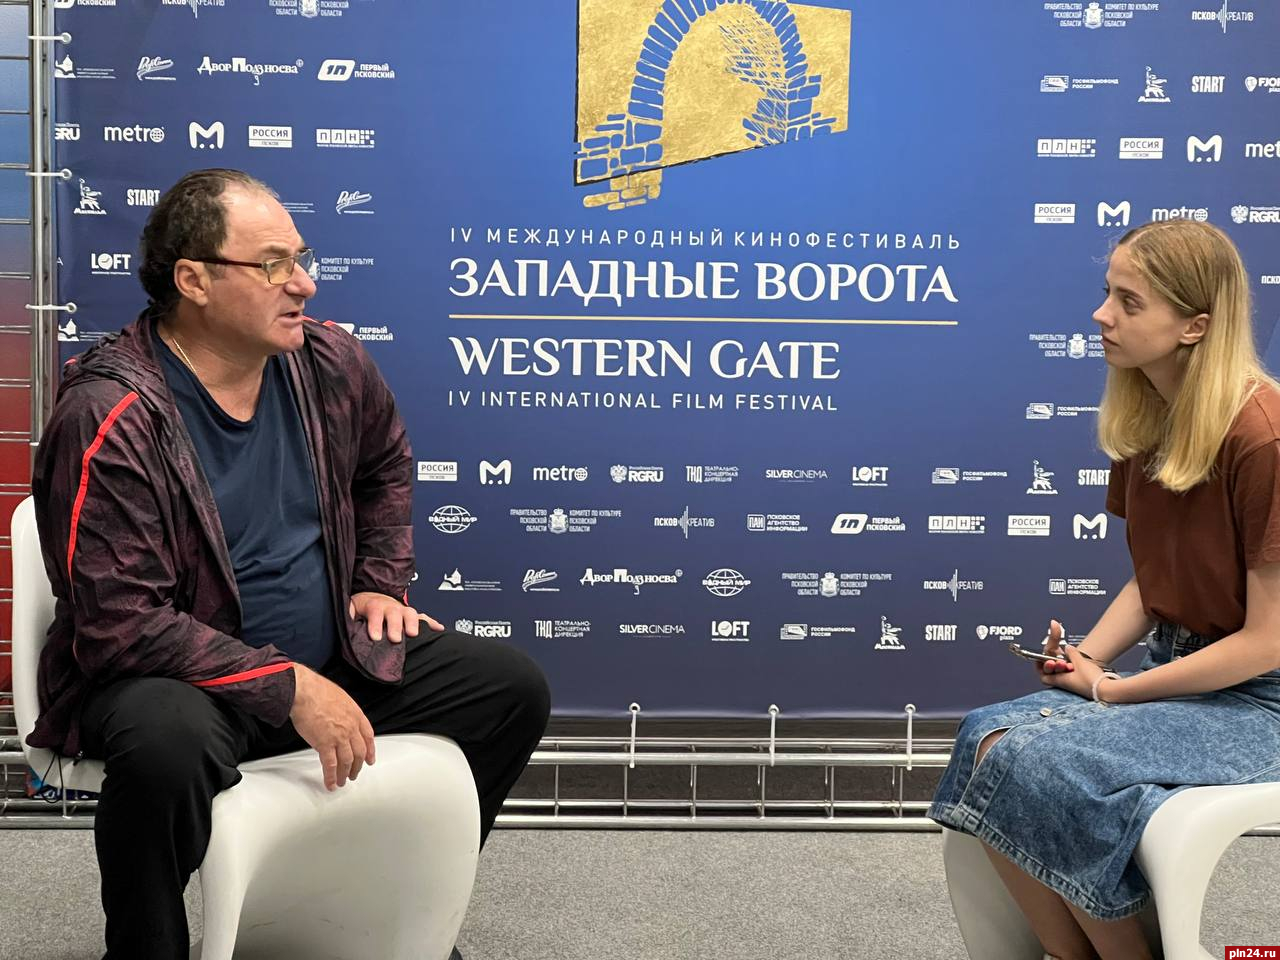 Актер Семен Стругачёв о фестивале «Западные ворота»: Это правильный формат для Пскова